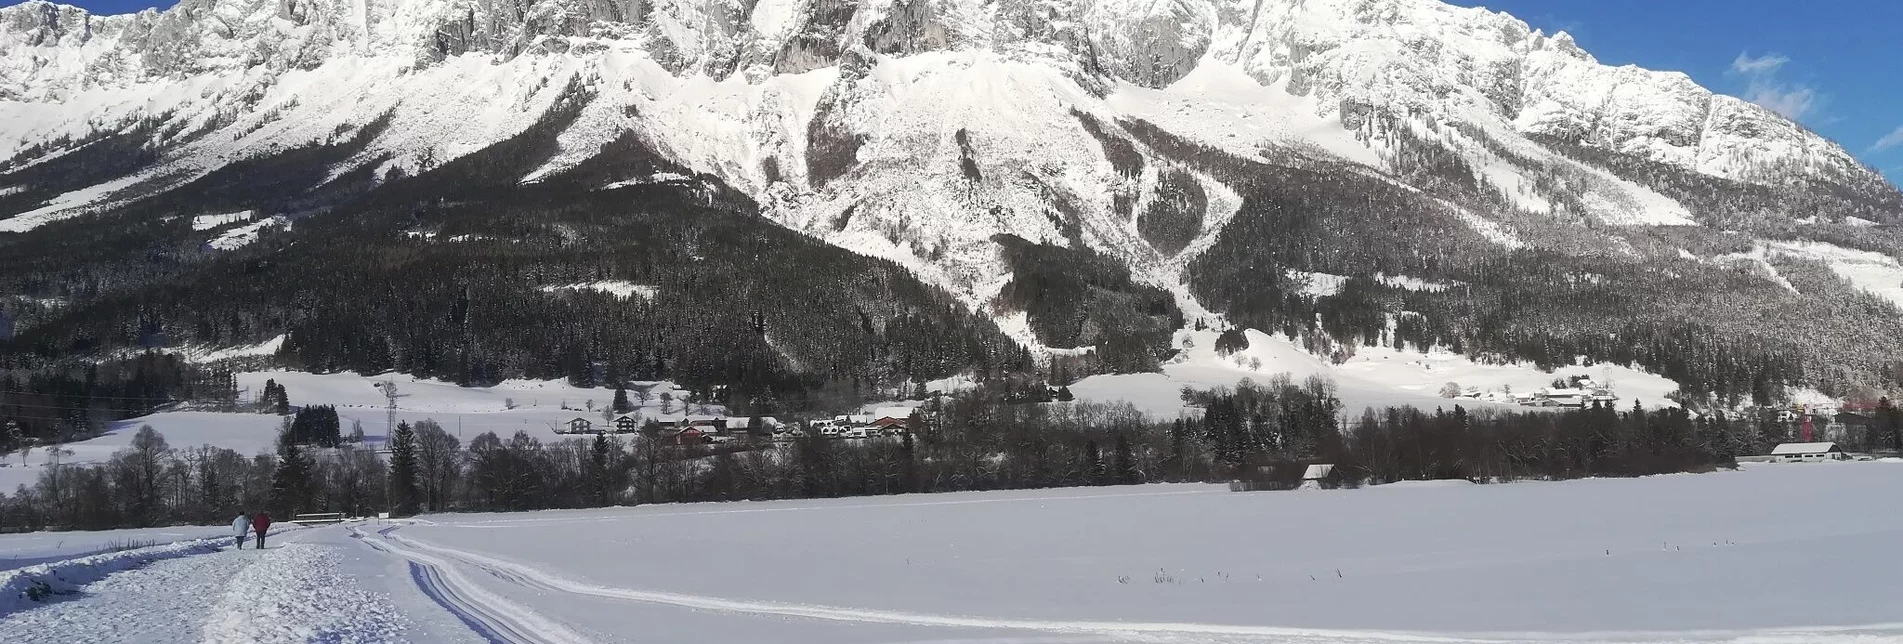 Langlauf klassisch Ennsloipe Öblarn-Niederöblarn - Touren-Impression #1 | © Erlebnisregion Schladming-Dachstein